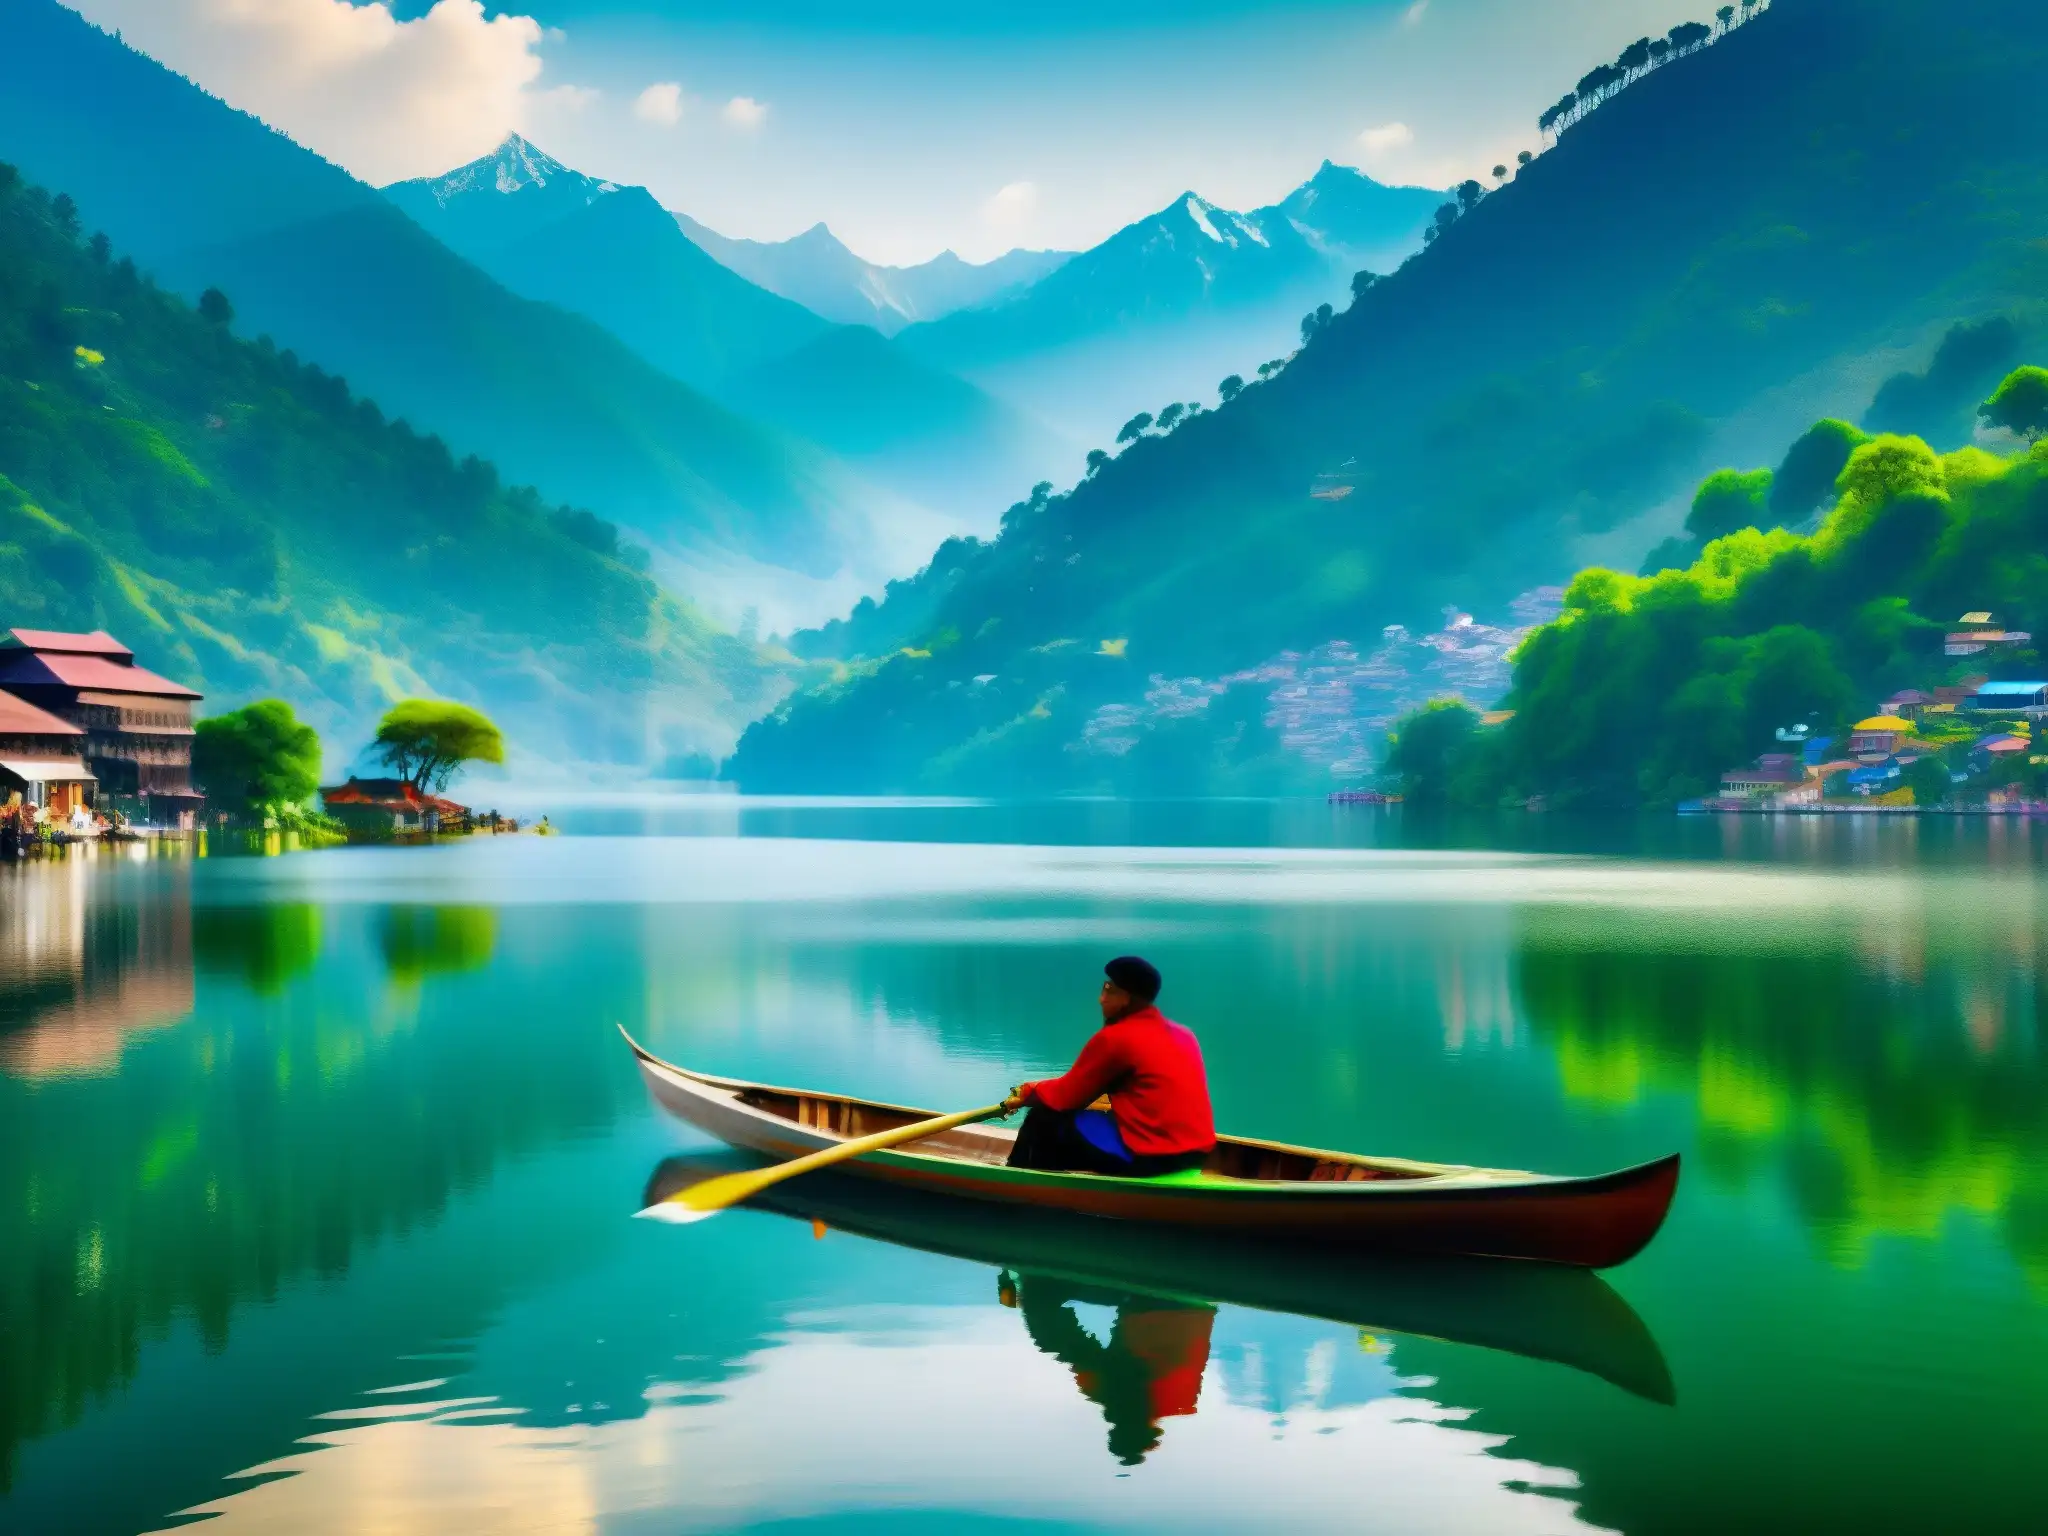 Un lago sereno rodeado de verdes colinas, reflejando los majestuosos Himalayas